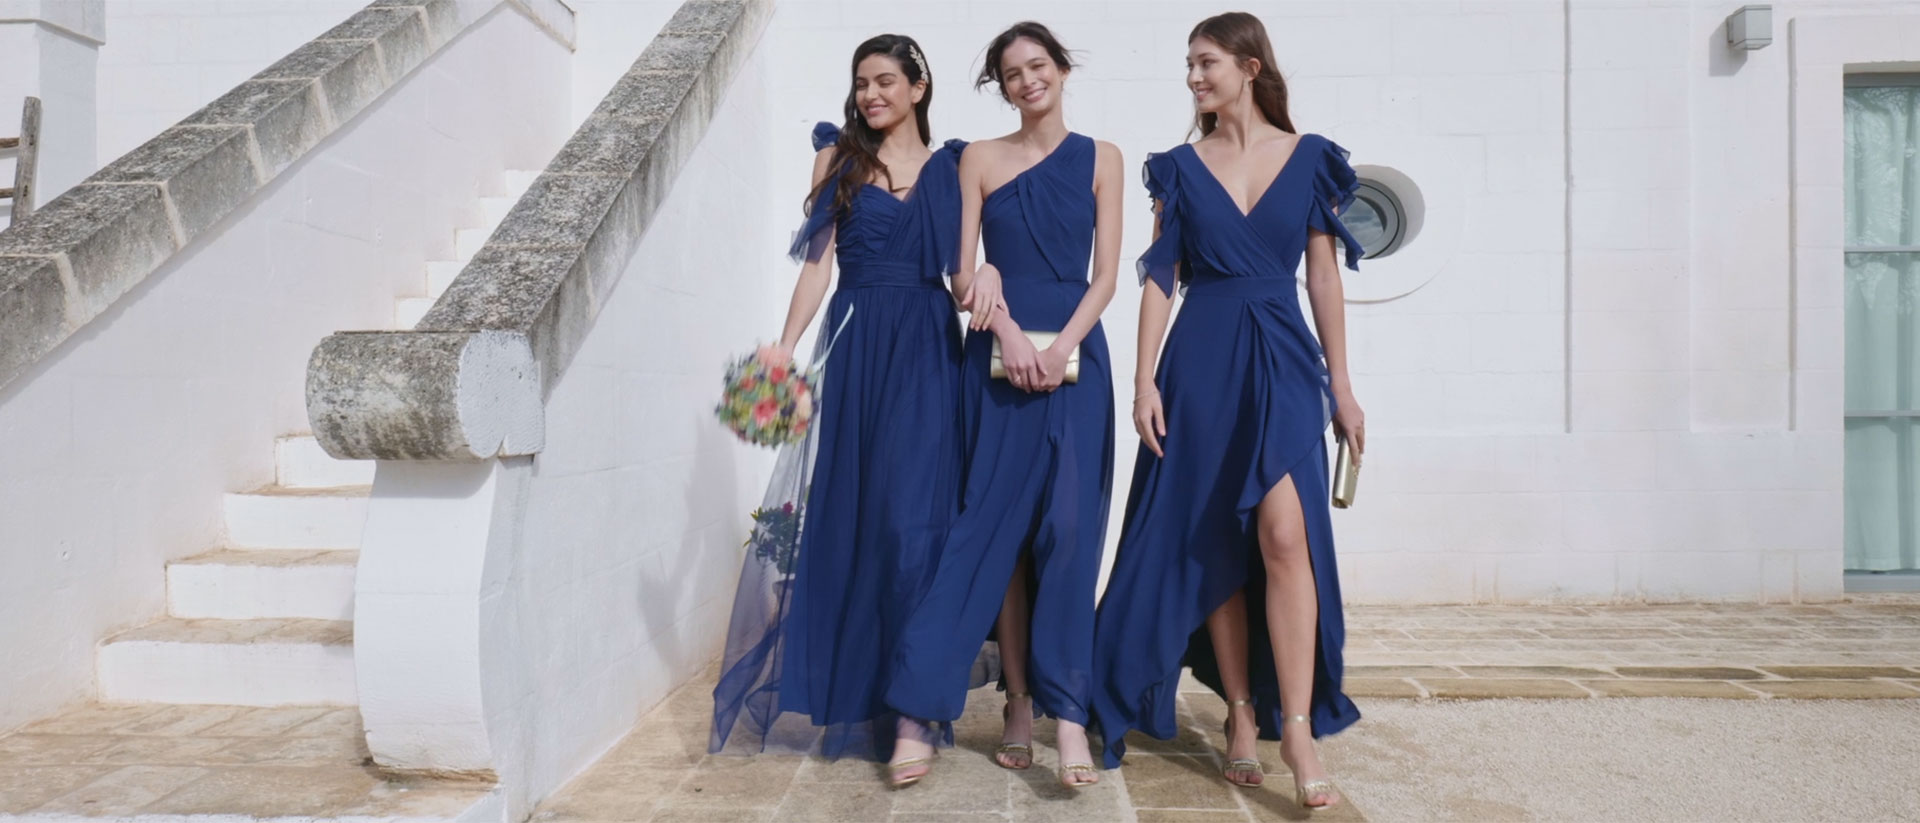 Rondsel Uitdrukkelijk As Rinascimento | Women's clothing & accessories | Made in Italy